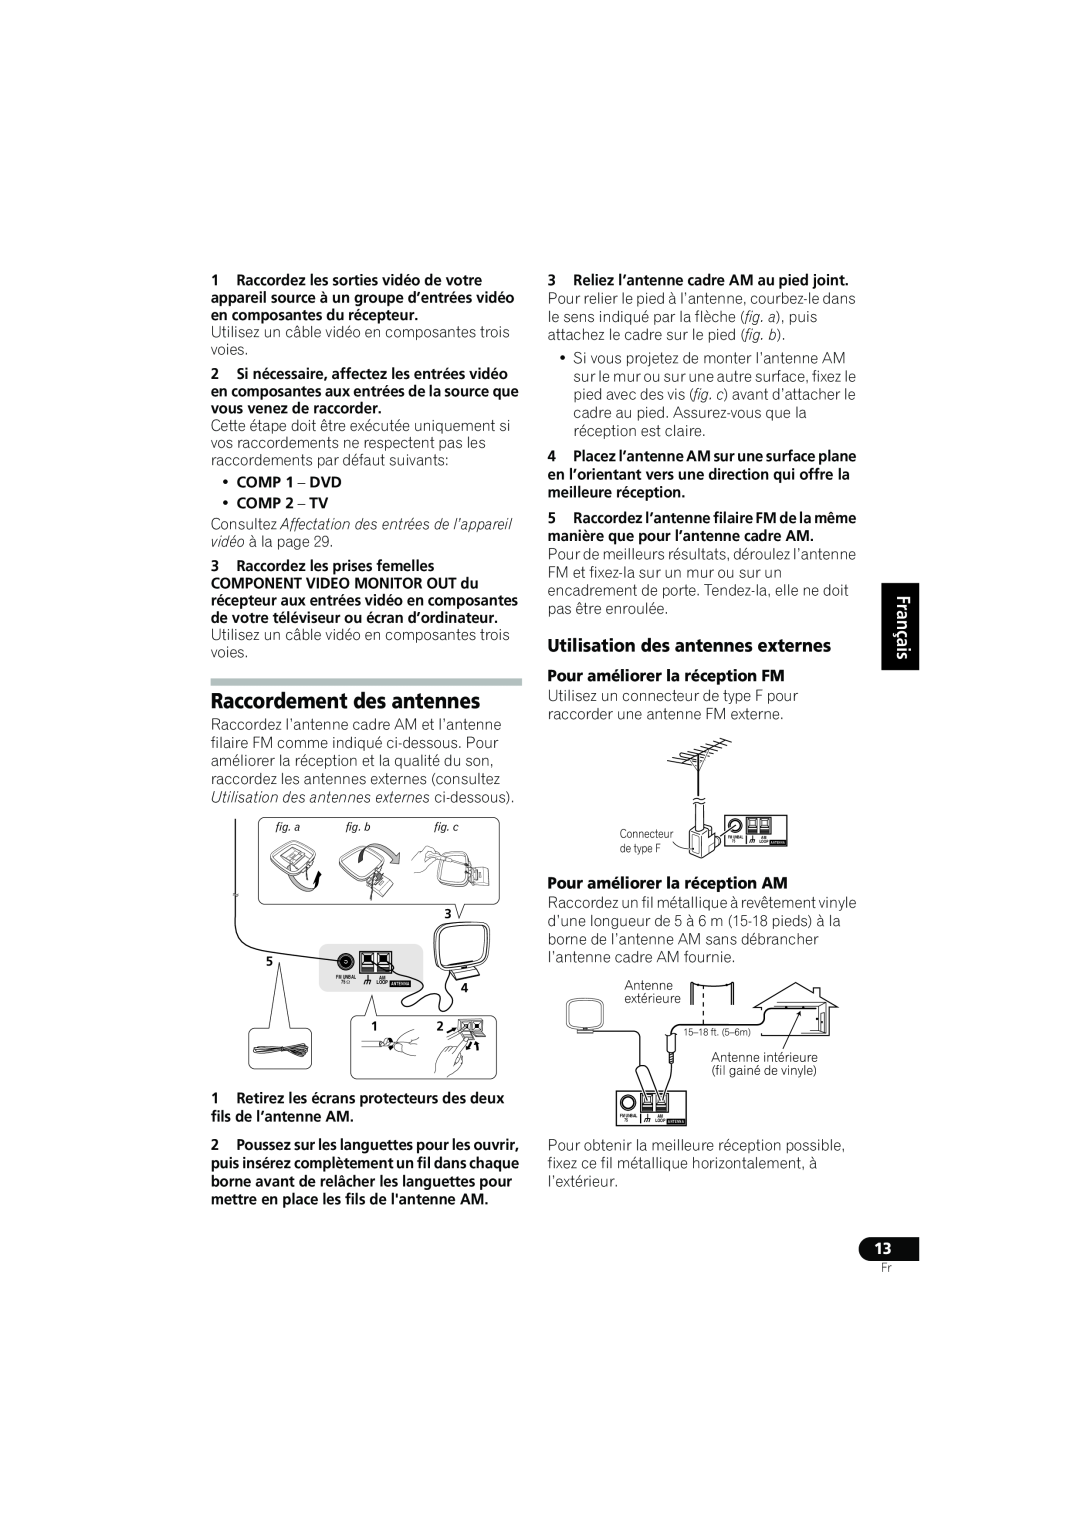 Pioneer VSX-516 operating instructions Raccordement des antennes, Deutsch, Pour améliorer la réception AM 